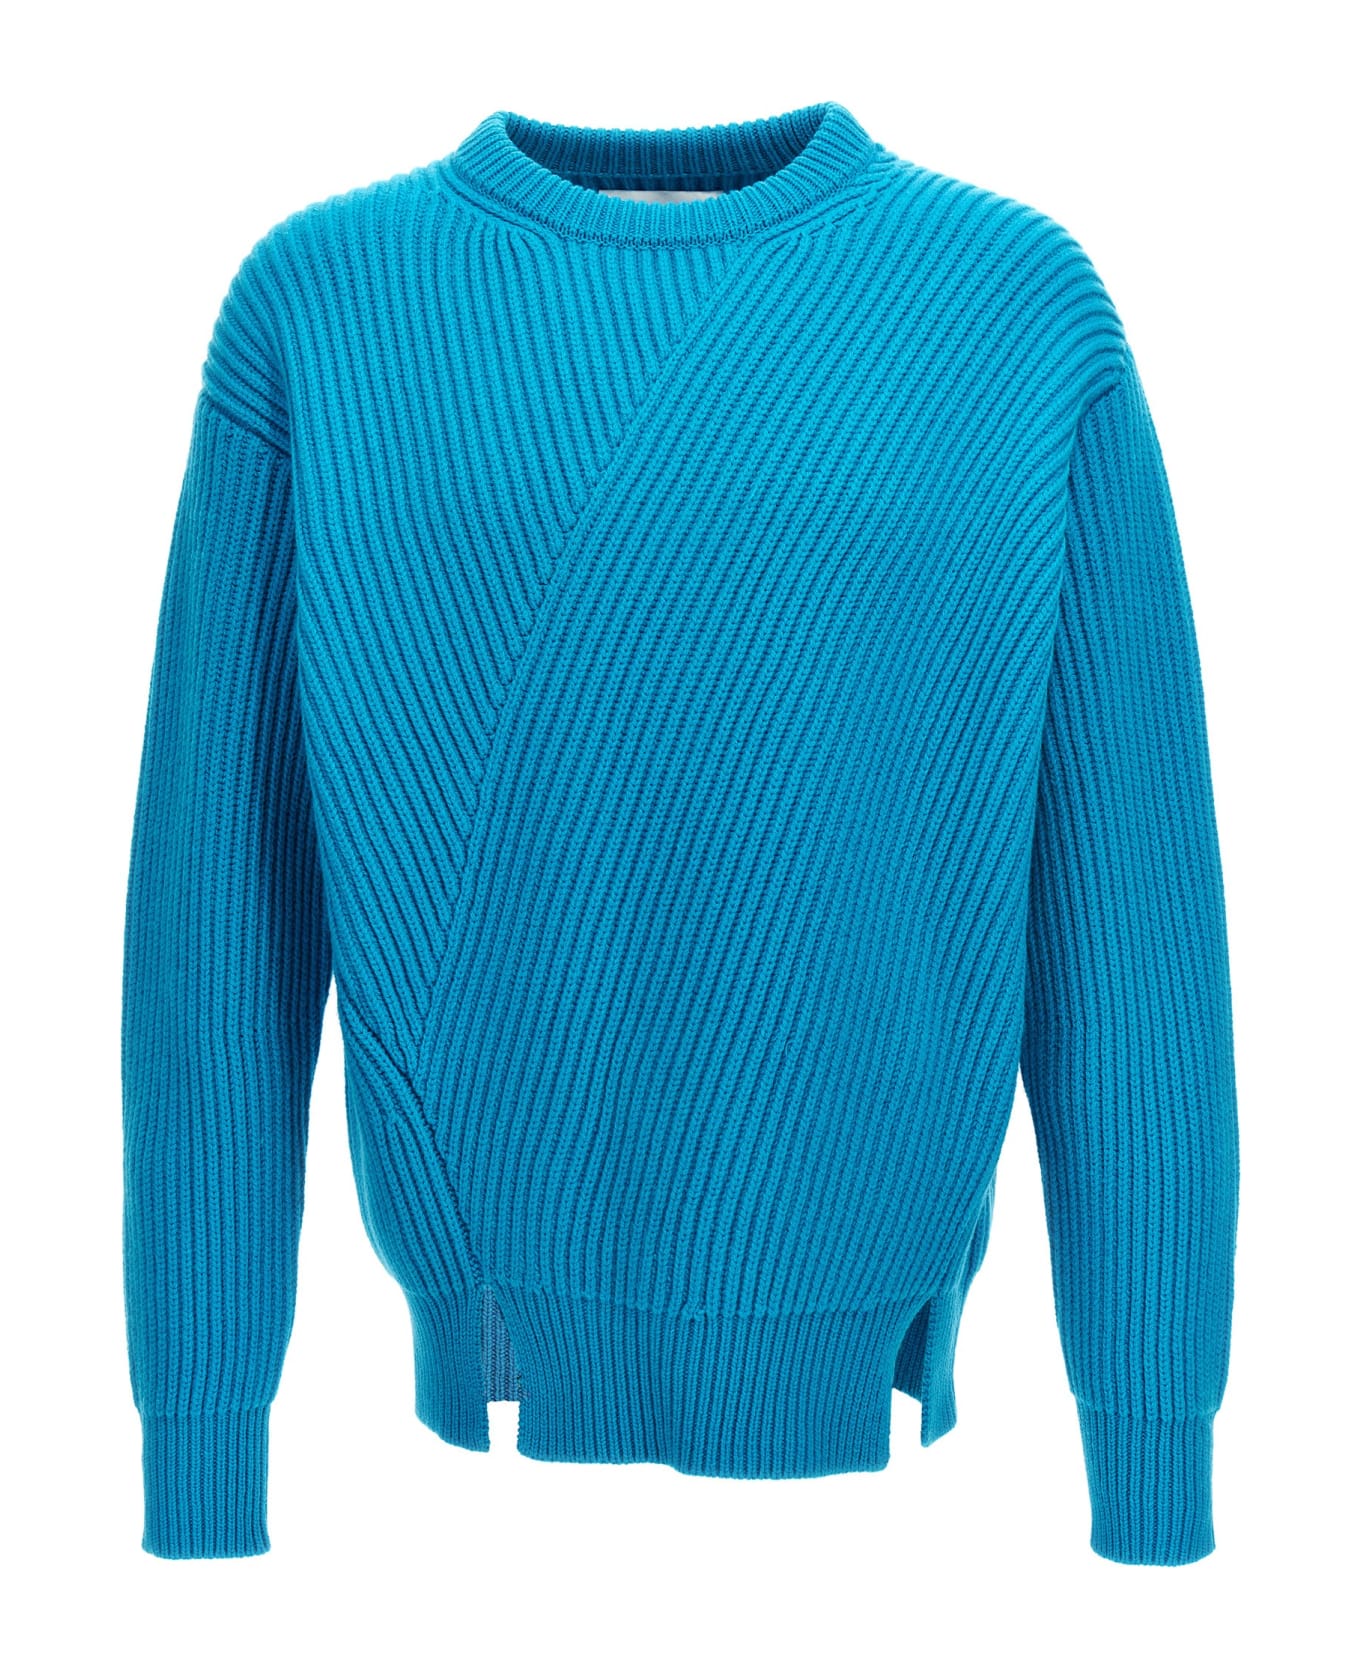 Jil Sander Wool Sweater - Light Blue